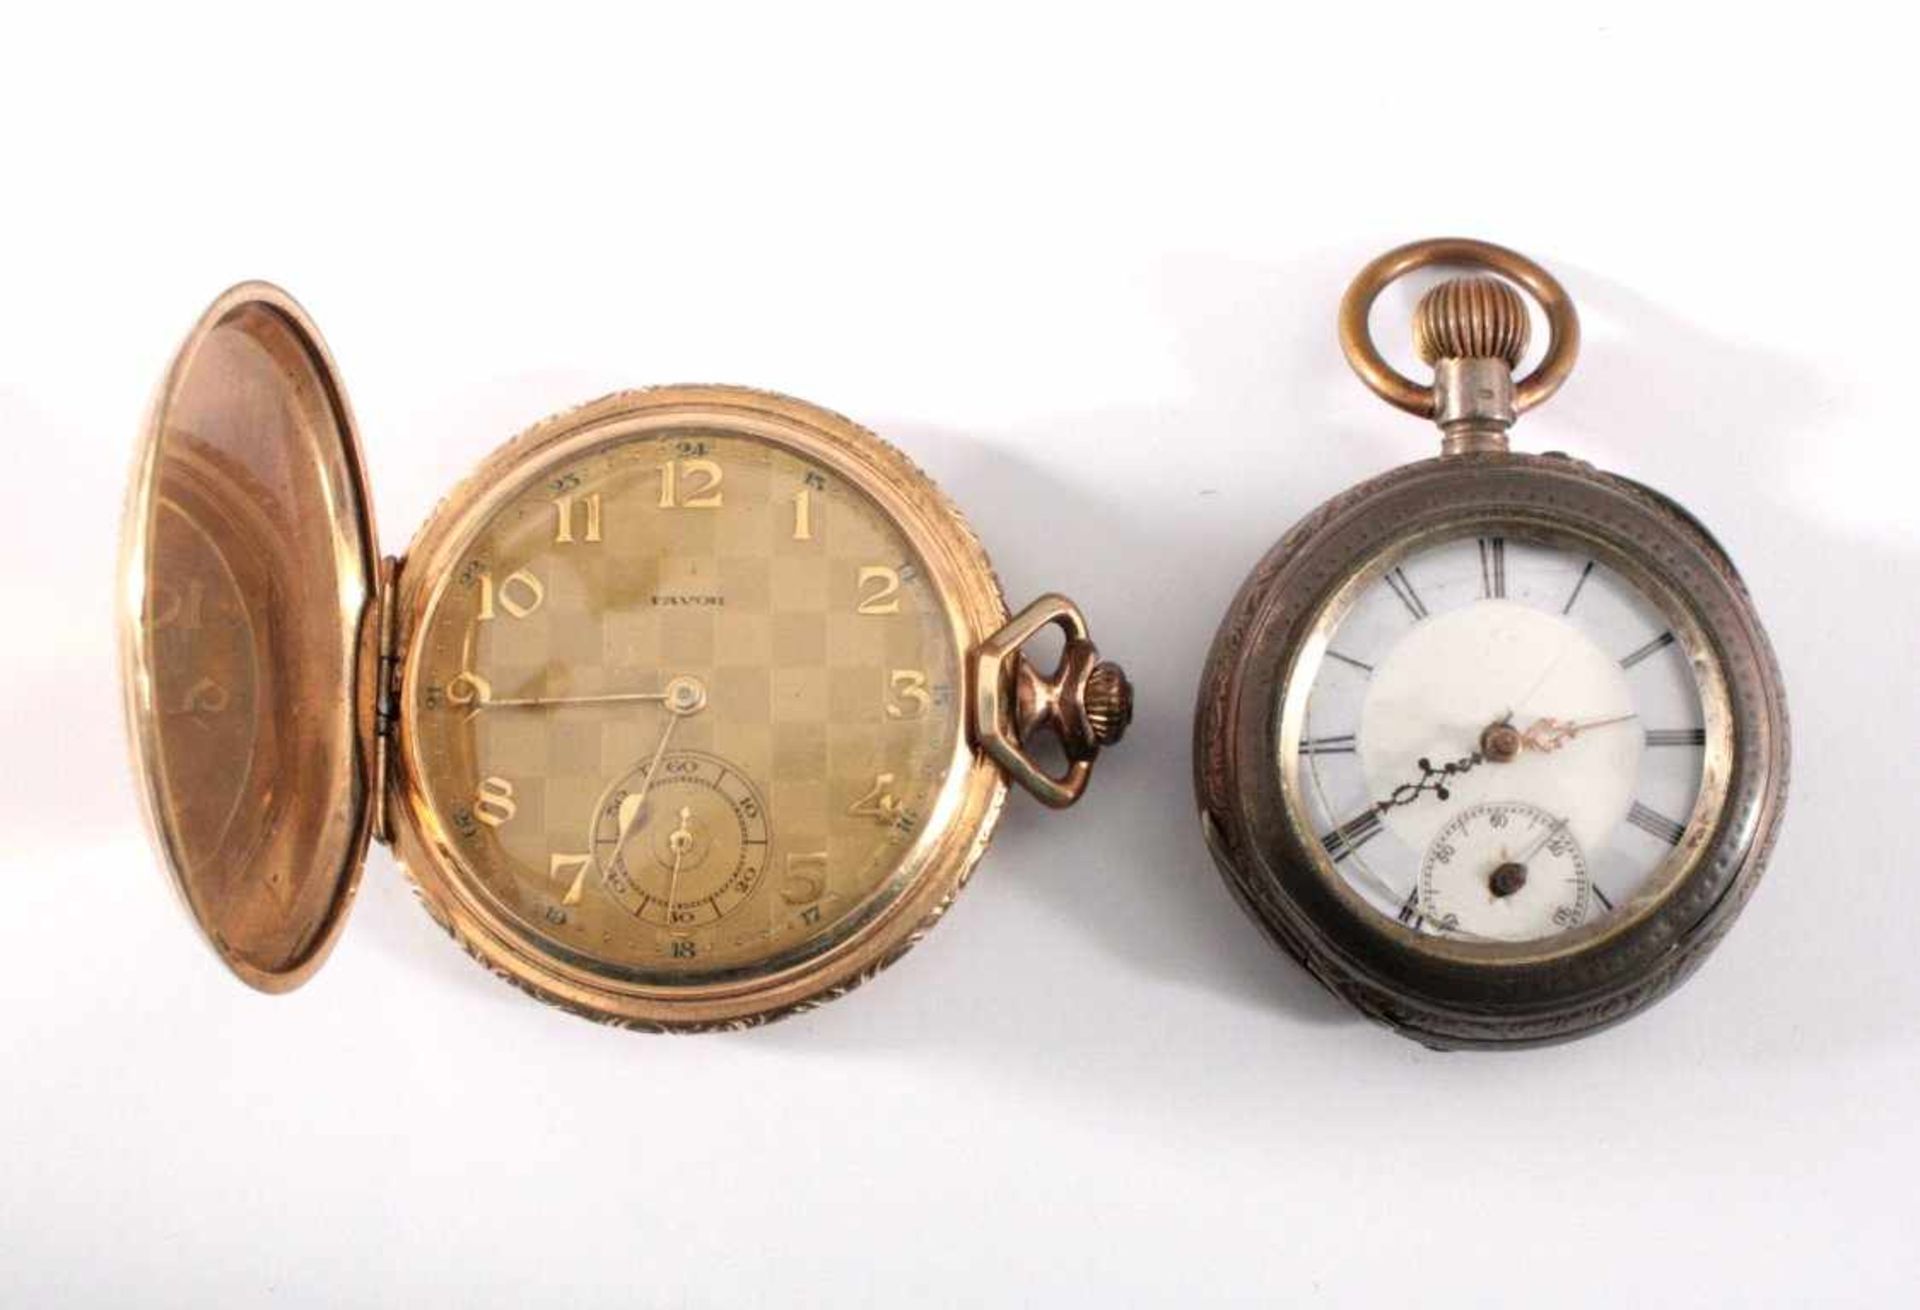 2 Taschenuhren1 Sprungdeckel-Taschenuhr der Marke Favor, vergoldetesGehäuse, Zifferblatt mit